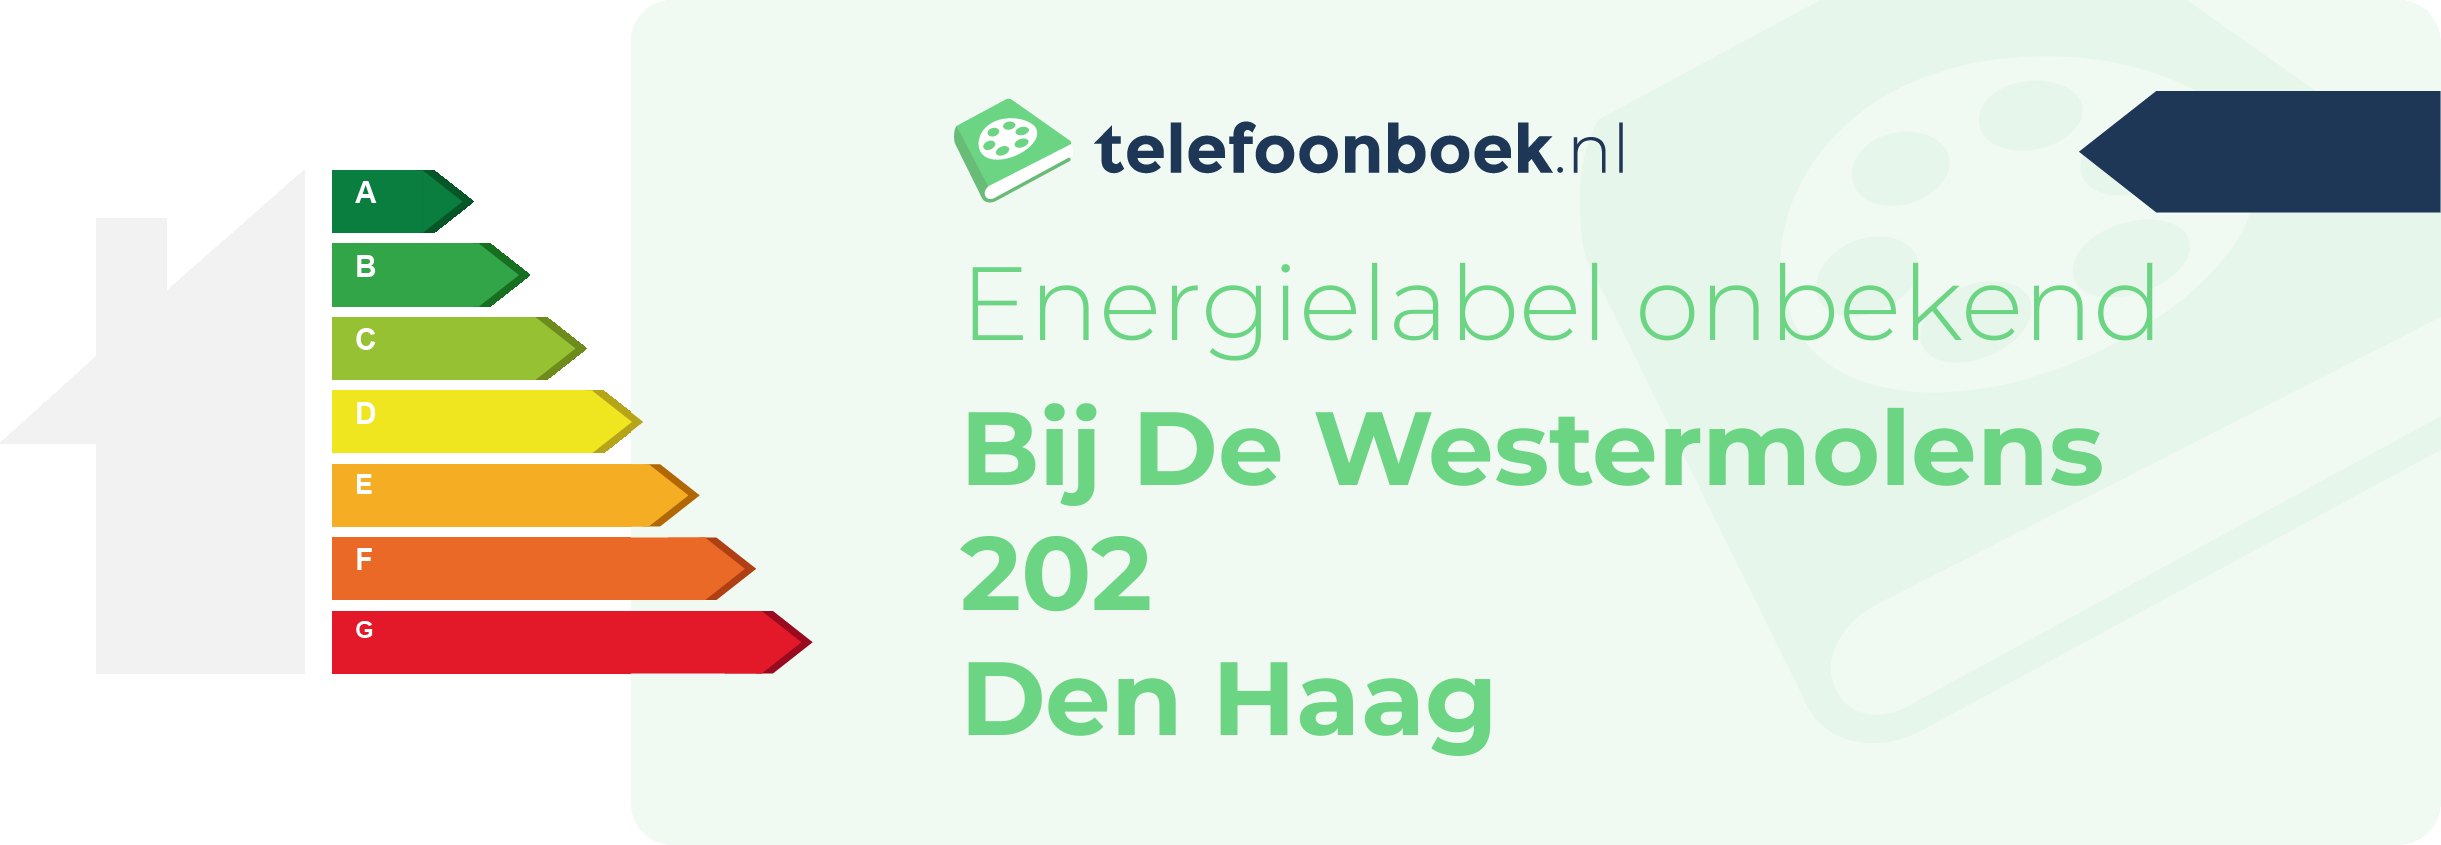 Energielabel Bij De Westermolens 202 Den Haag